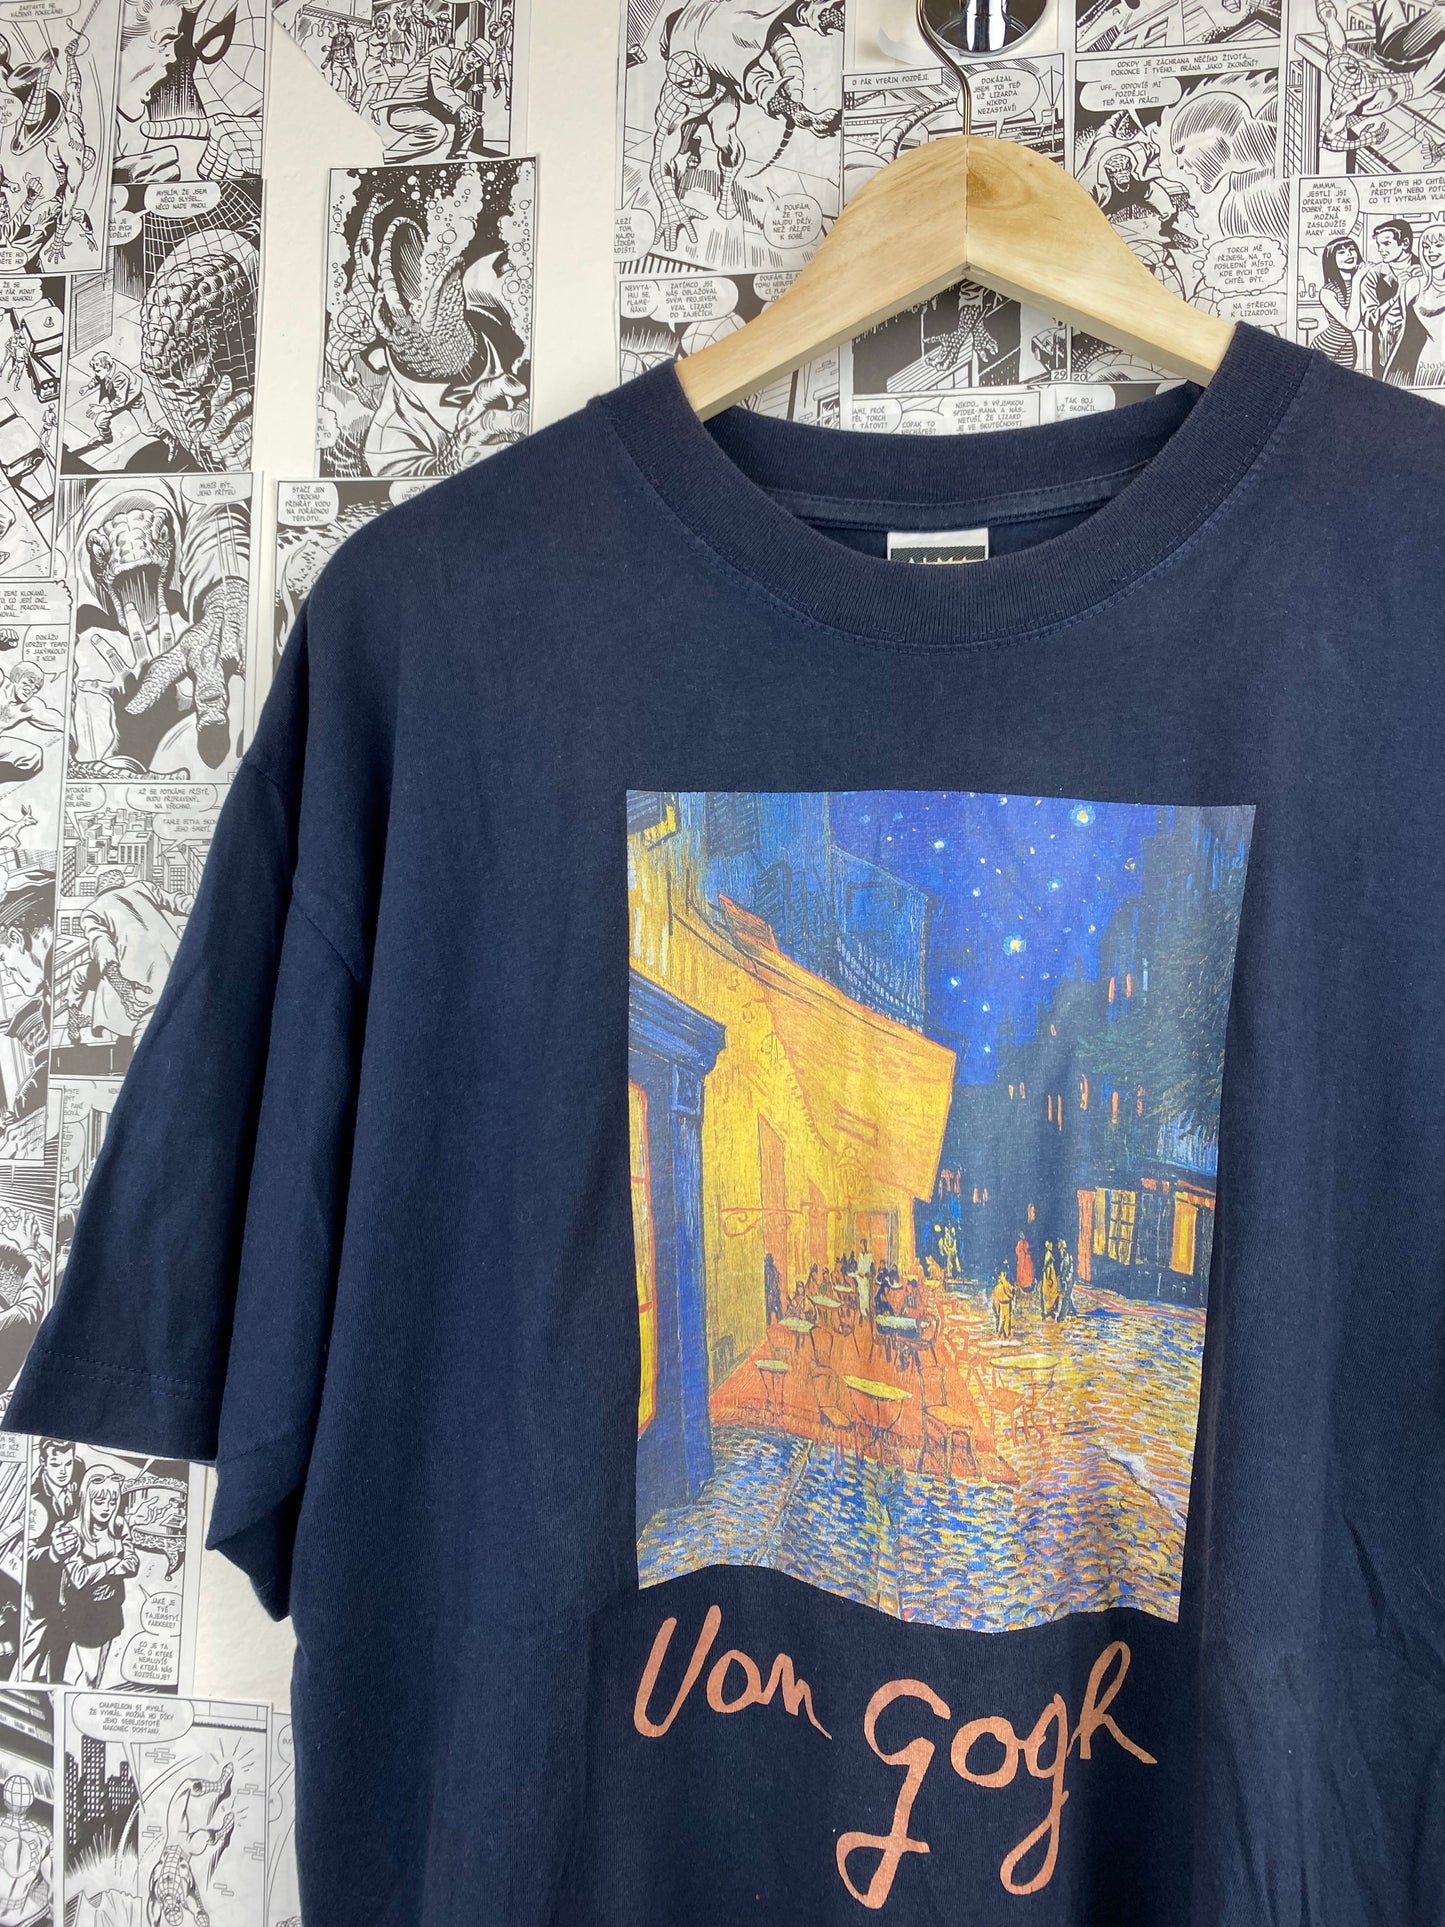 Vintage Van Gogh “Café Terrace at Night” 90s t-shirt - size XL